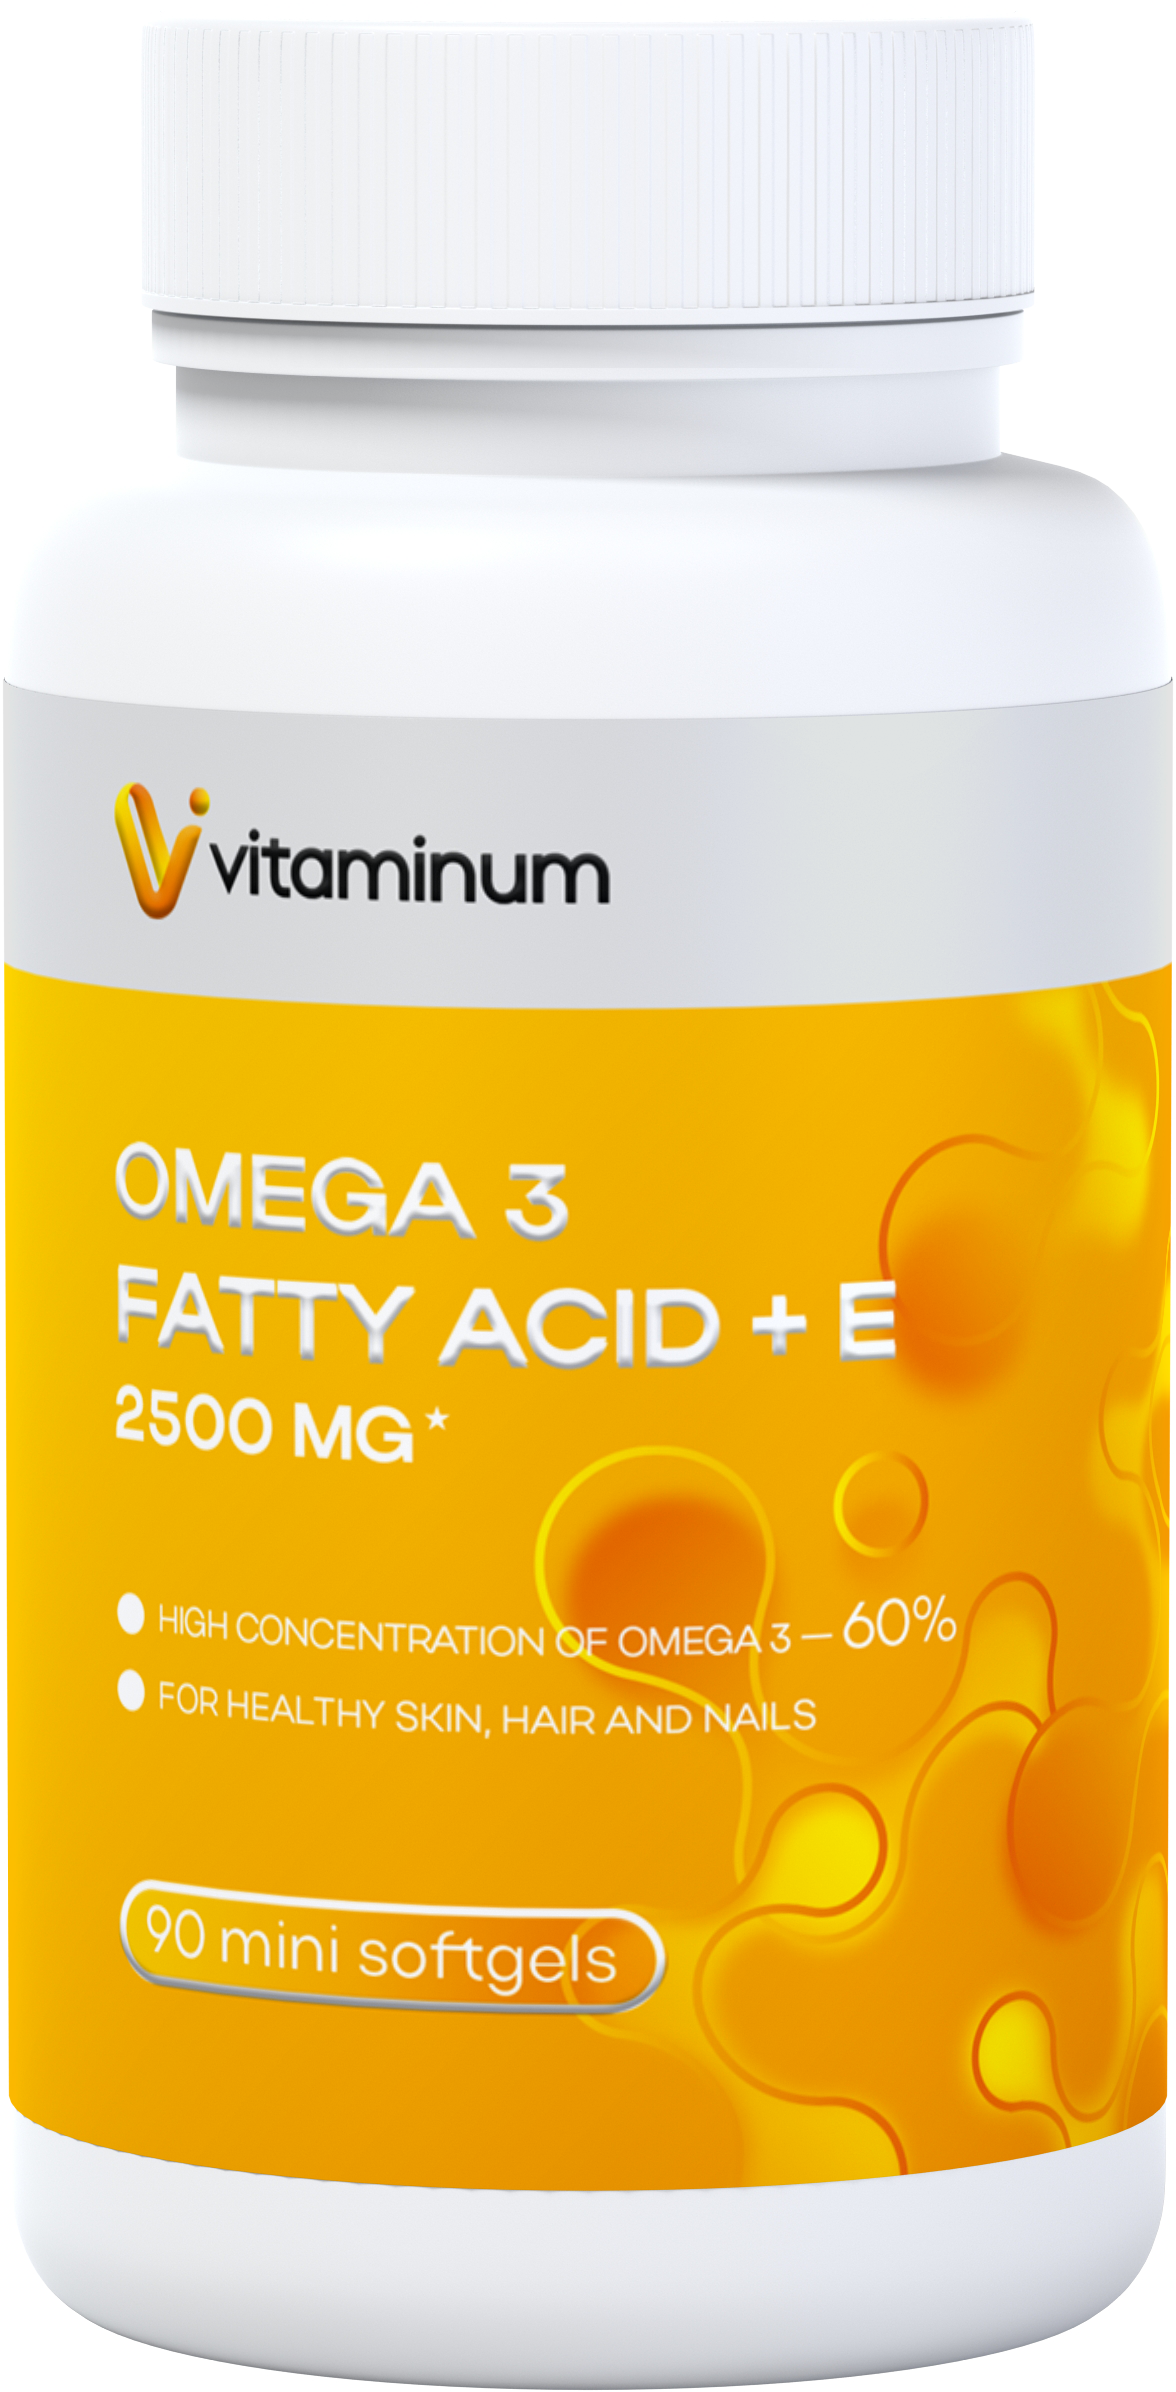  Vitaminum ОМЕГА 3 60% + витамин Е (2500 MG*) 90 капсул 700 мг   в Нижней Туре